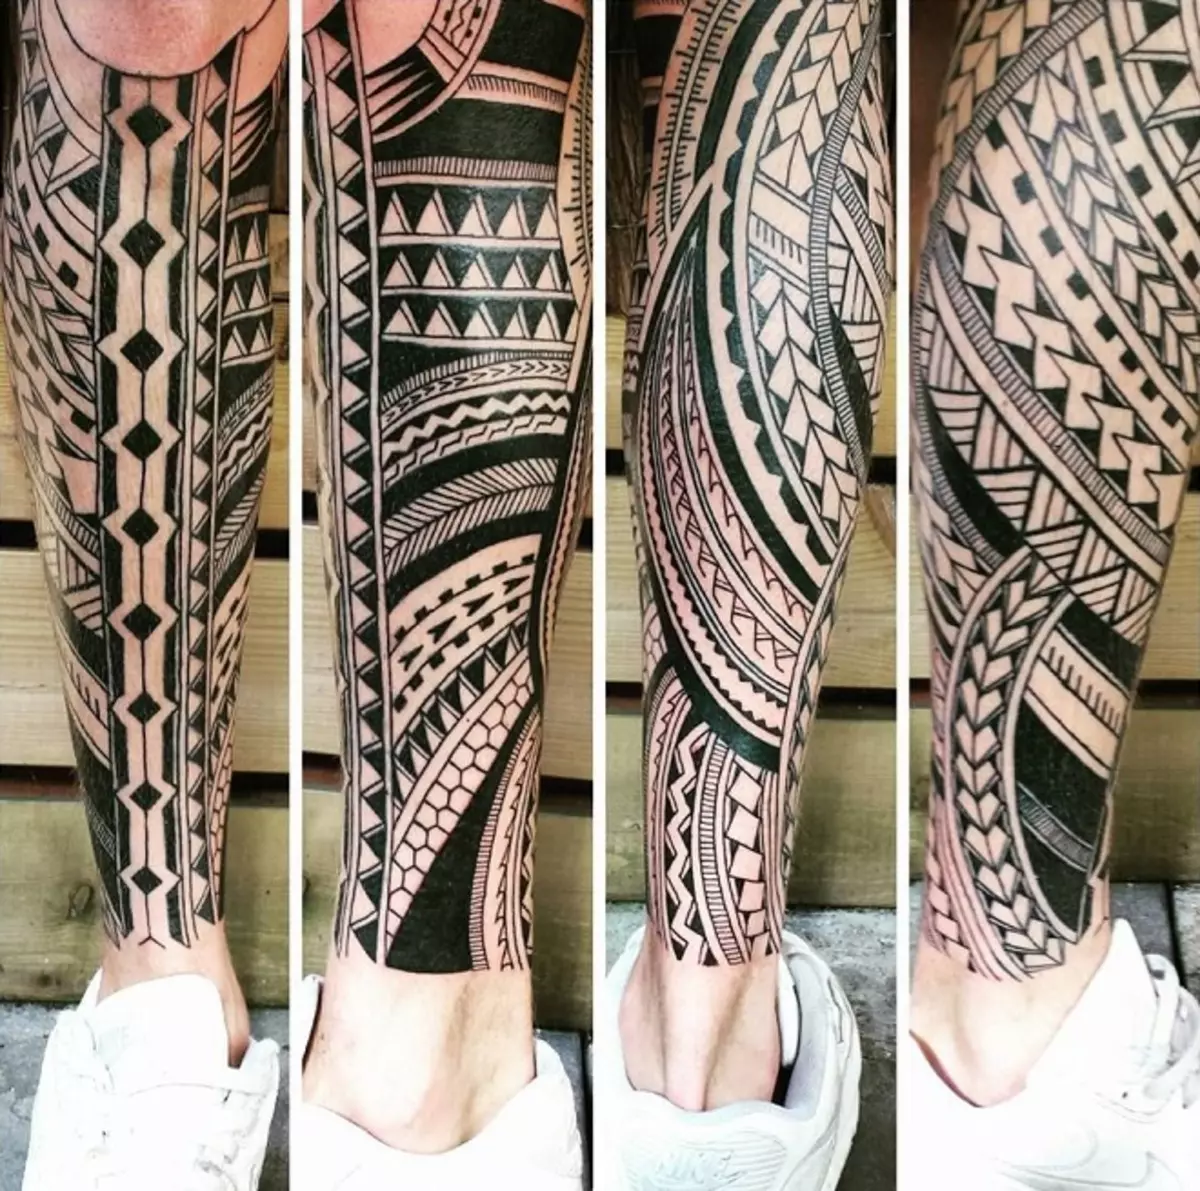 Maori tetovaža (36 fotografija): Muška tetovaže na ruku i njihovo značenje, skice, ženska tetovaža u stilu plemena, pregled simbola 14254_31